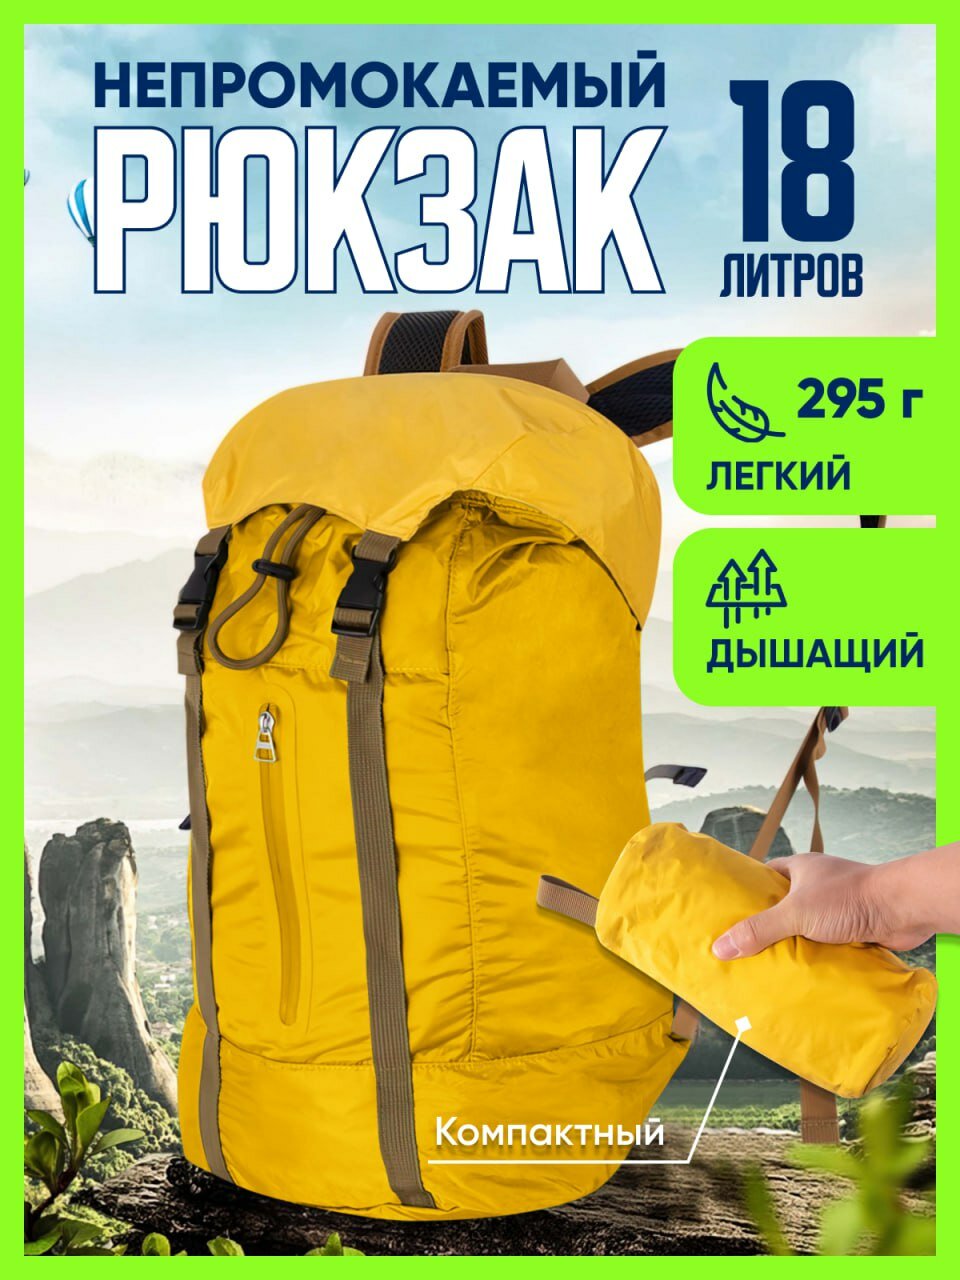 Рюкзак туристический,18 литров, желтый